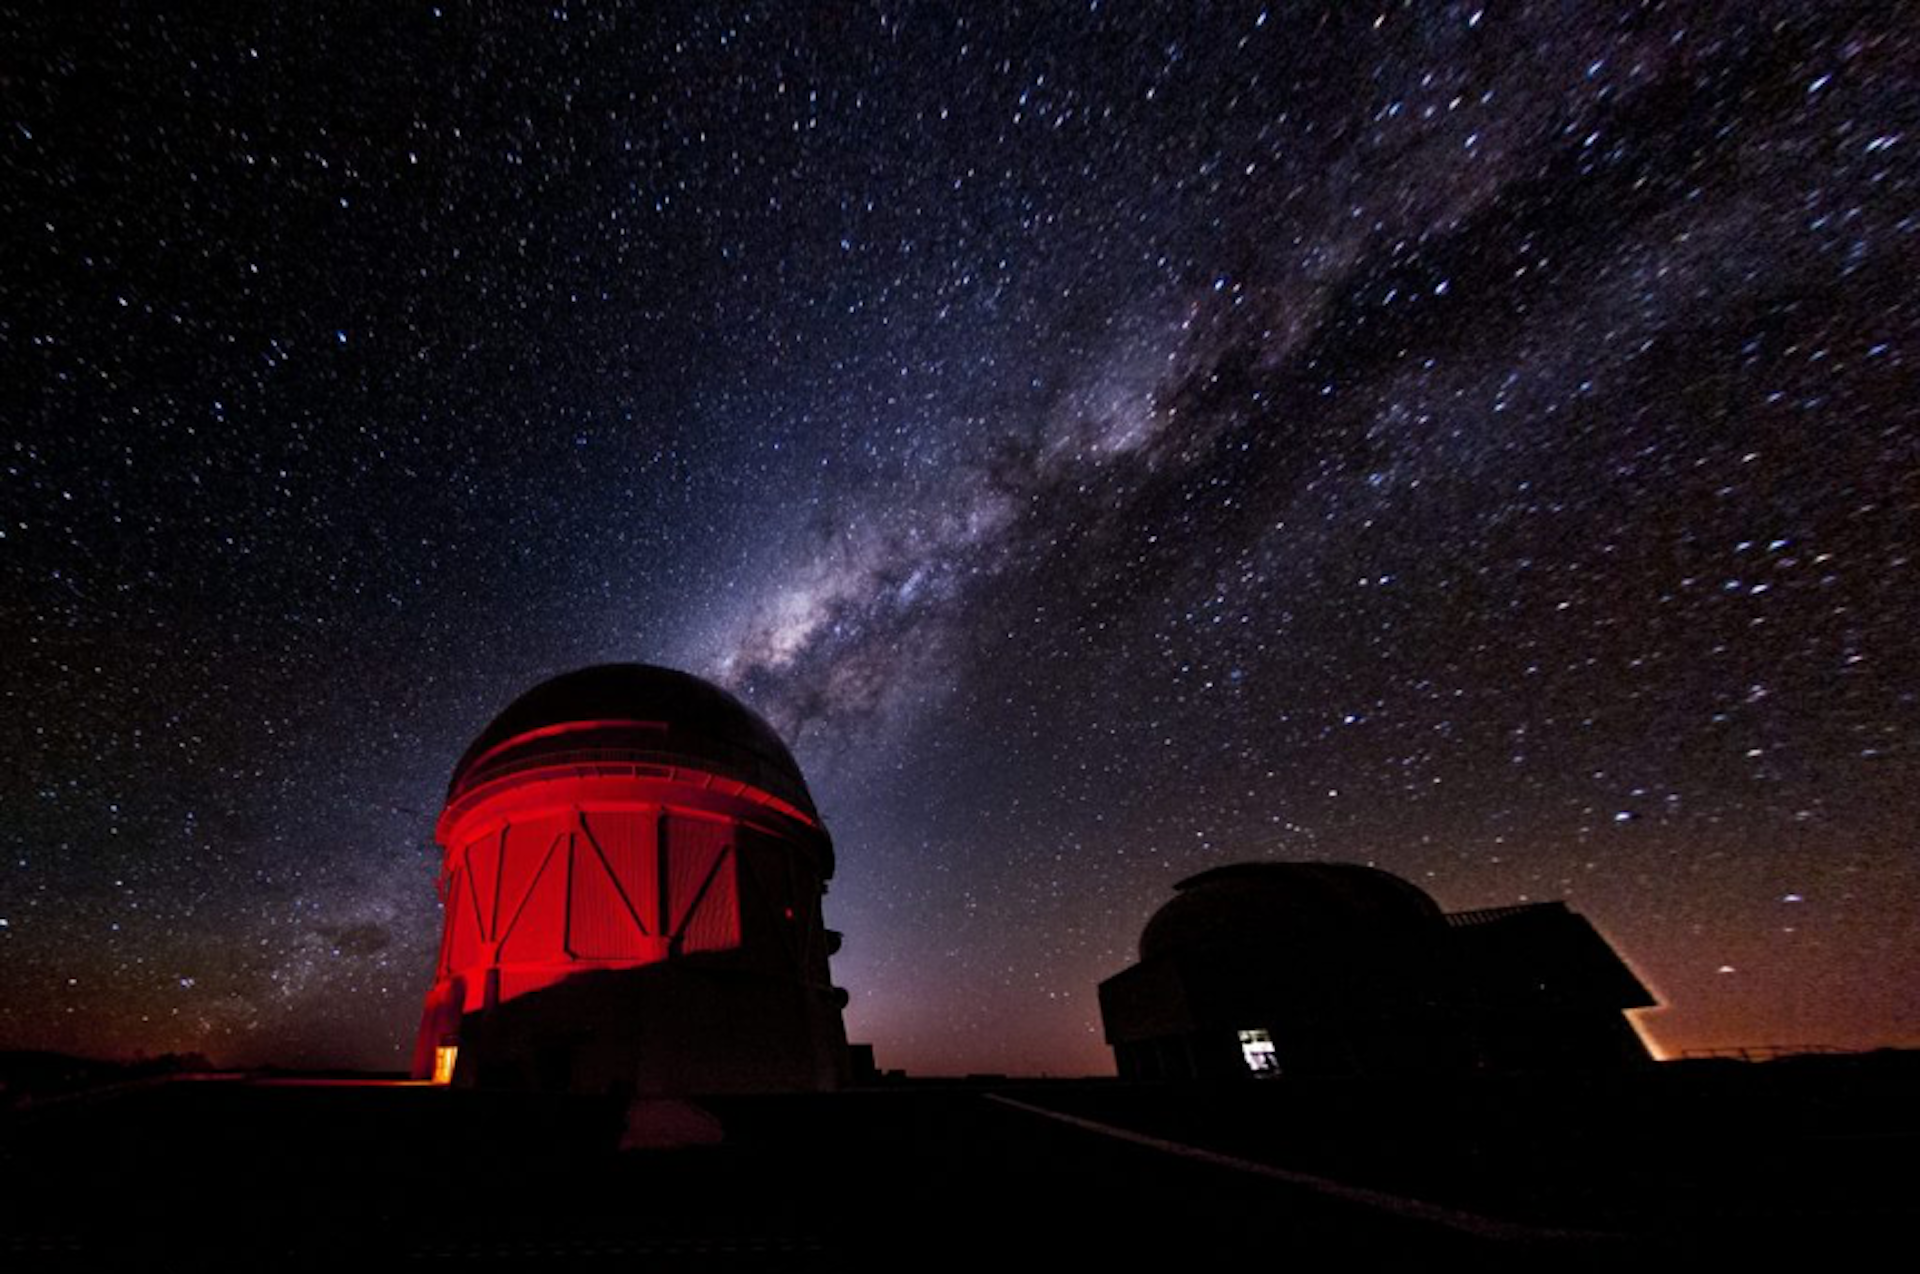 Een foto van een rood verlicht observatoriumgebouw met de sterrenhemel op de achtergrond.